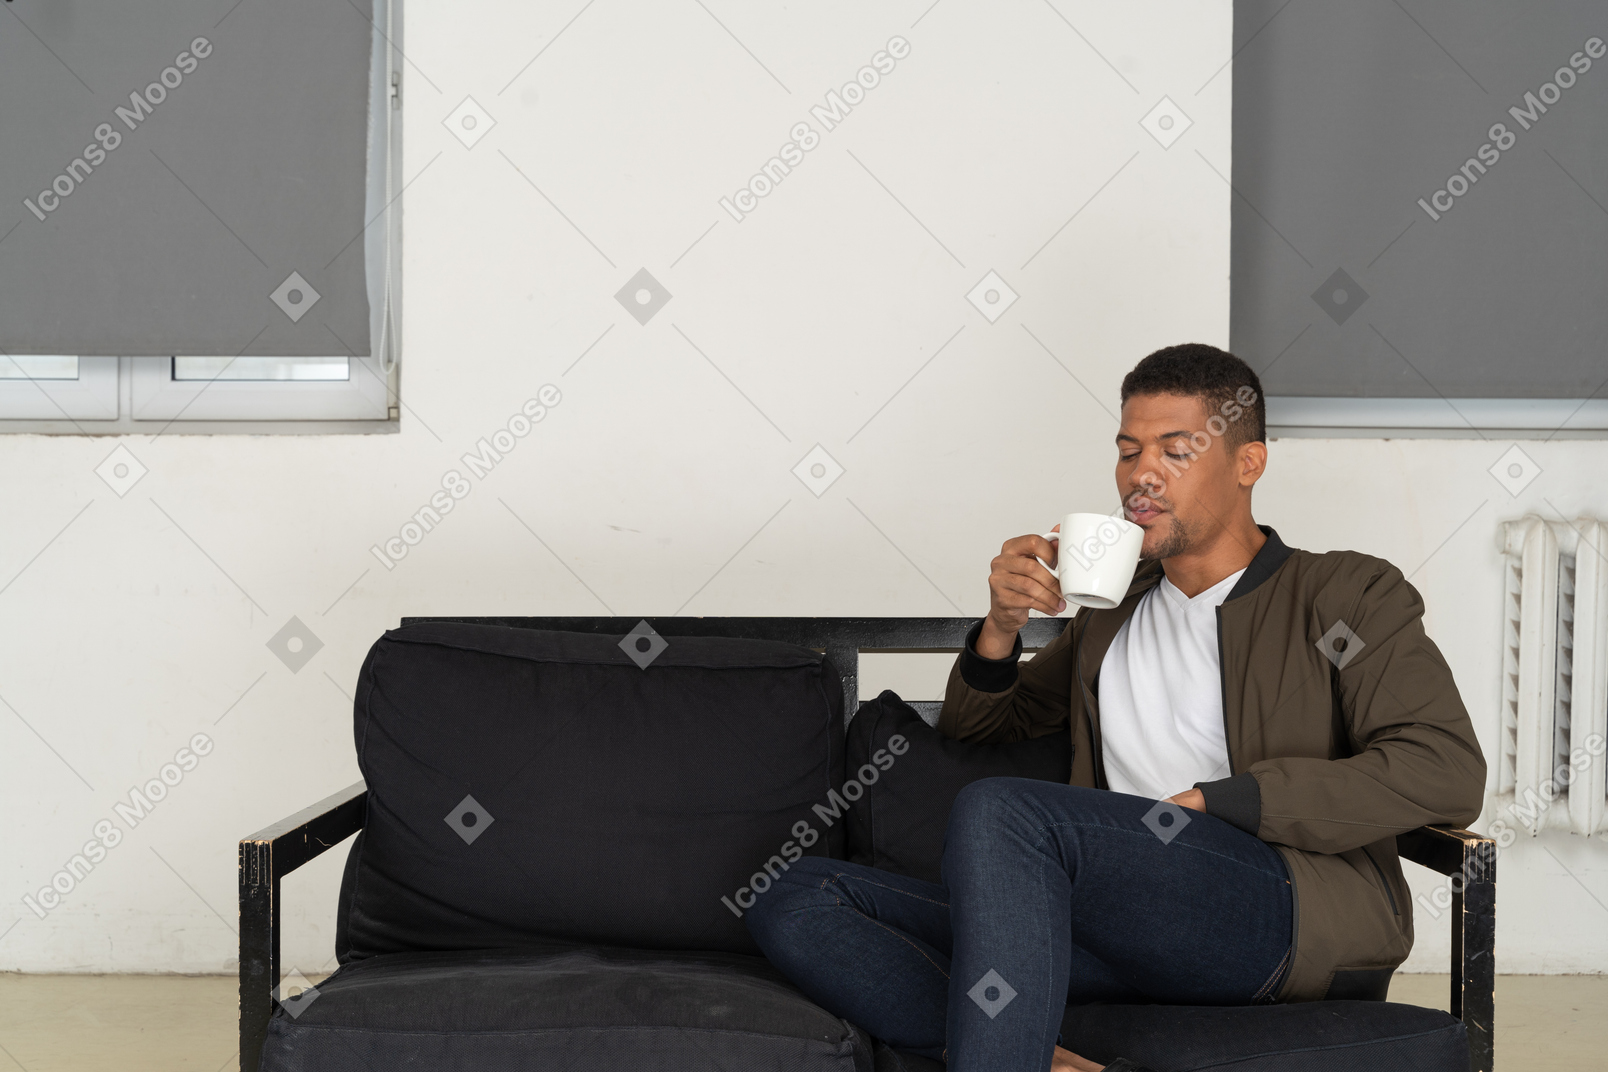 Vista frontal de um jovem sonhador sentado em um sofá enquanto bebe café